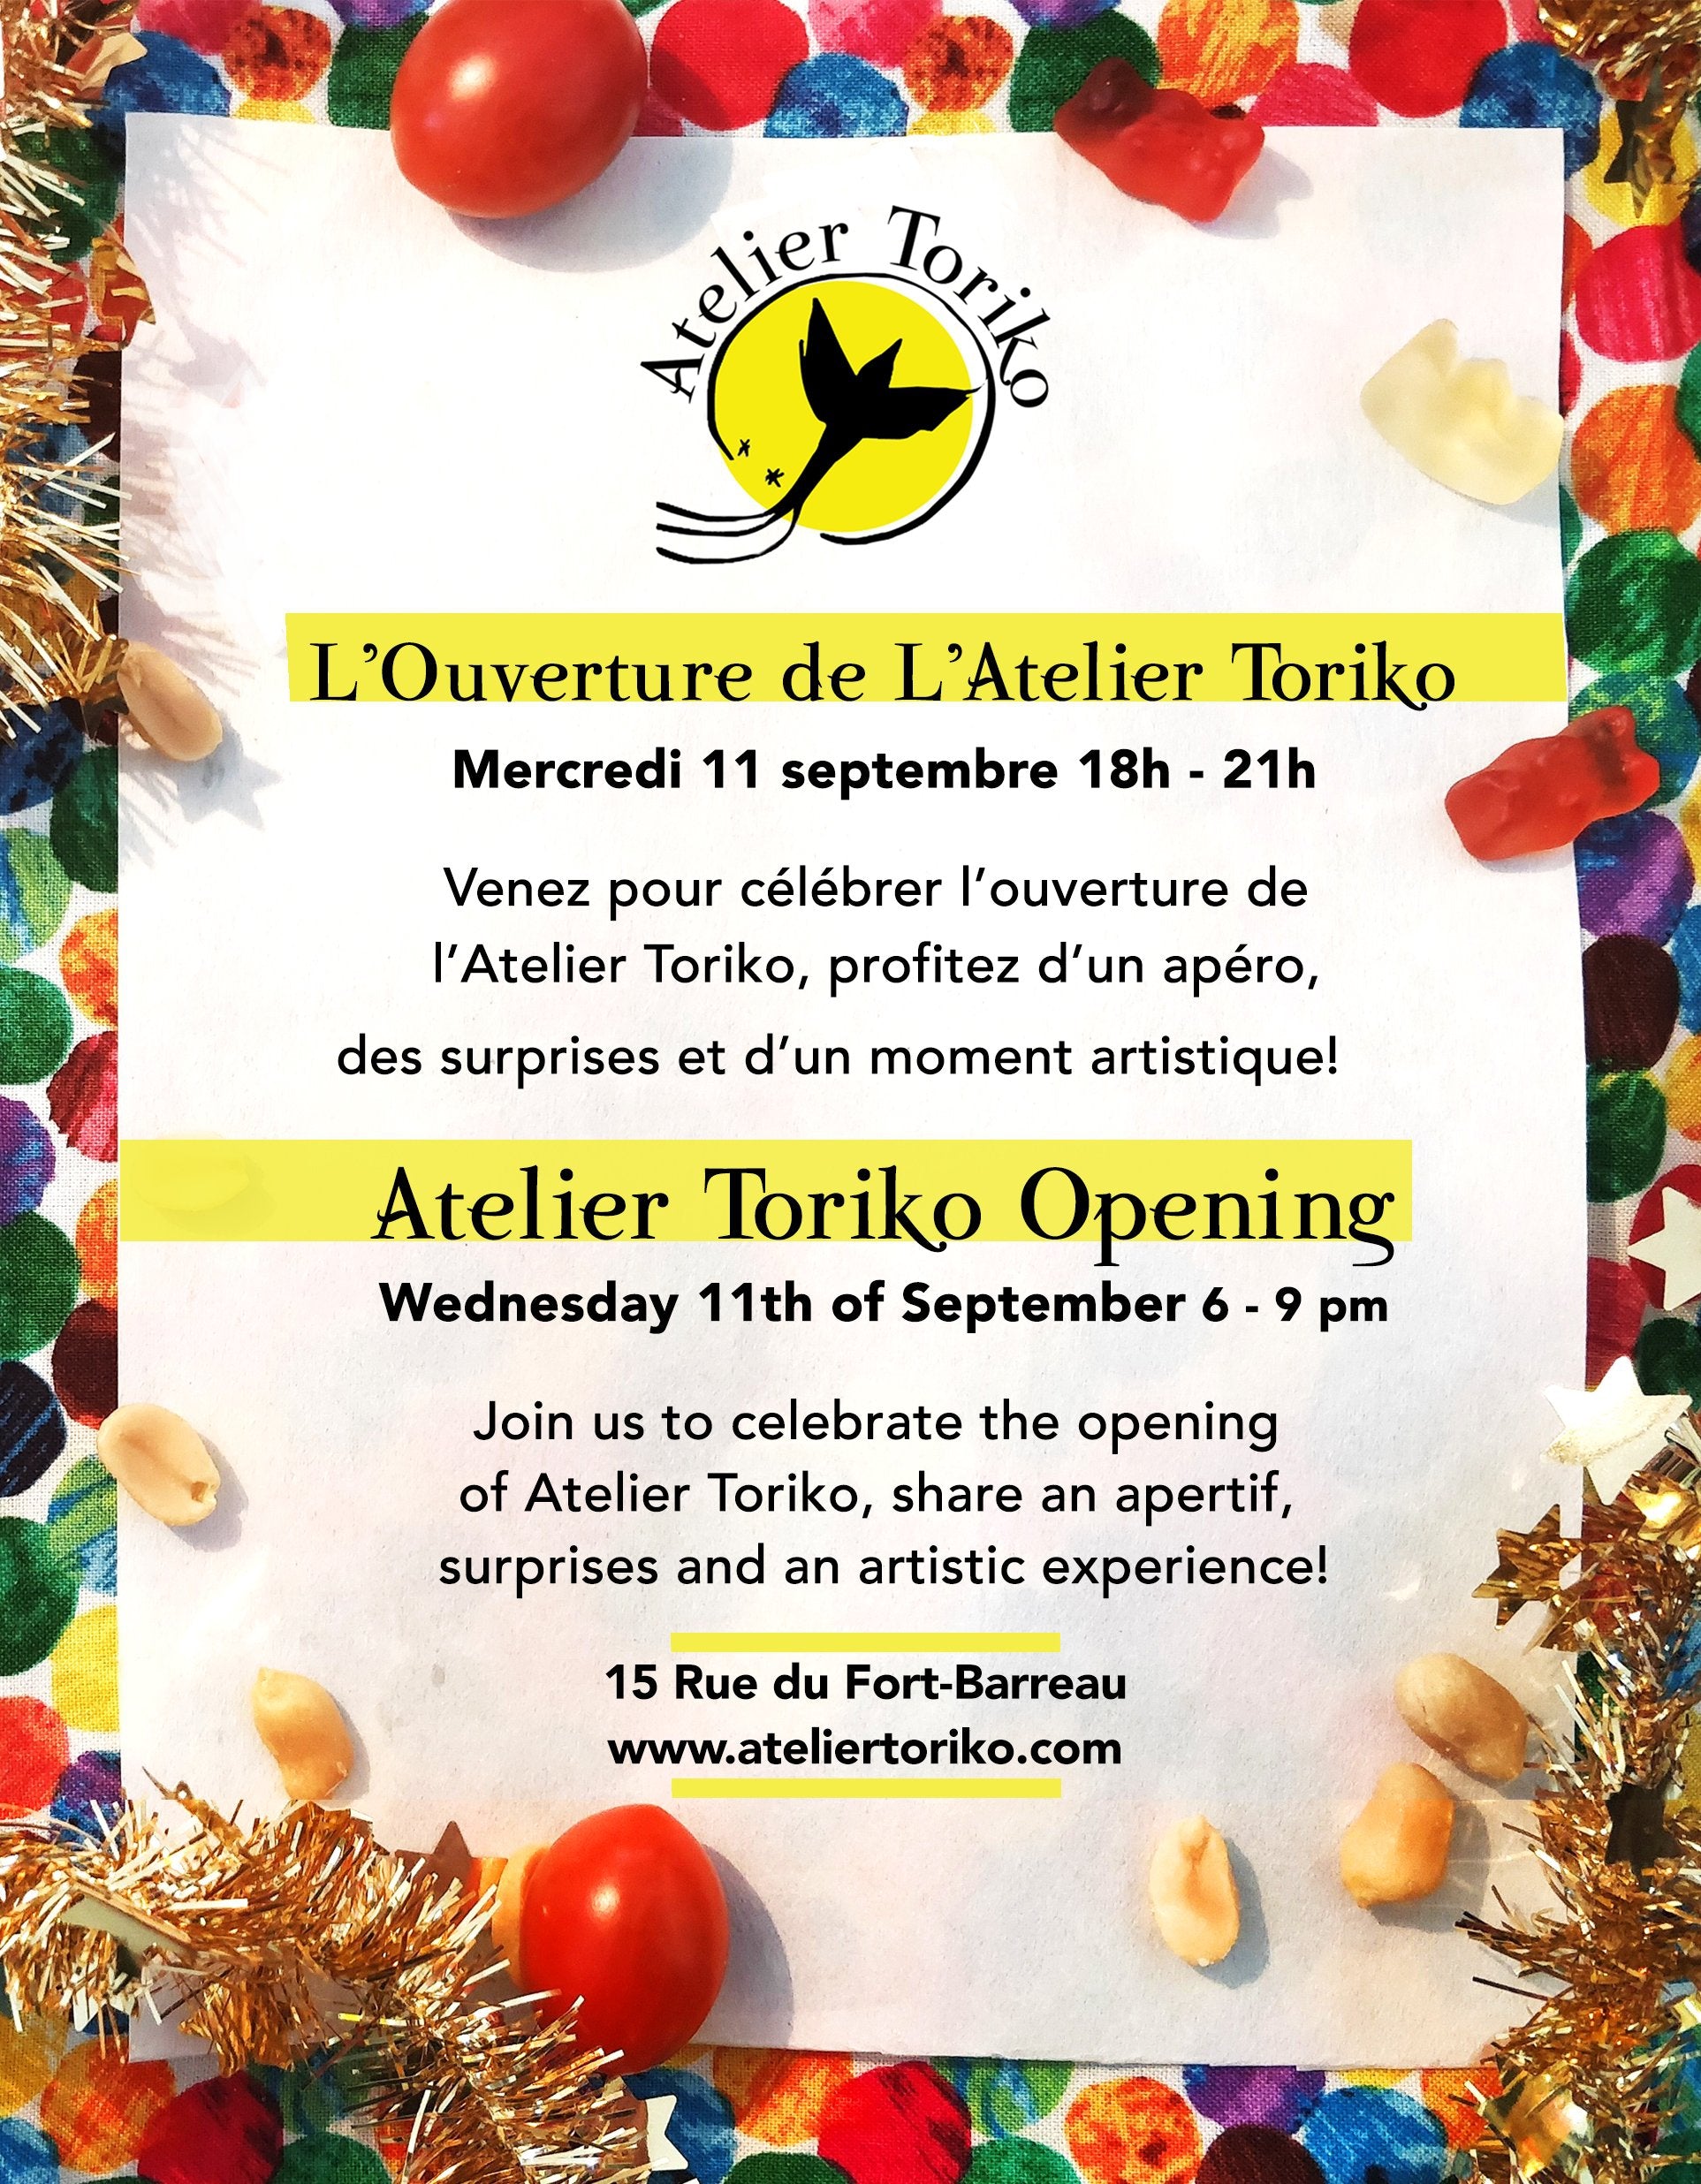 Atelier Toriko Opening - L'Ouverture de L'Atelier Toriko-Atelier Toriko